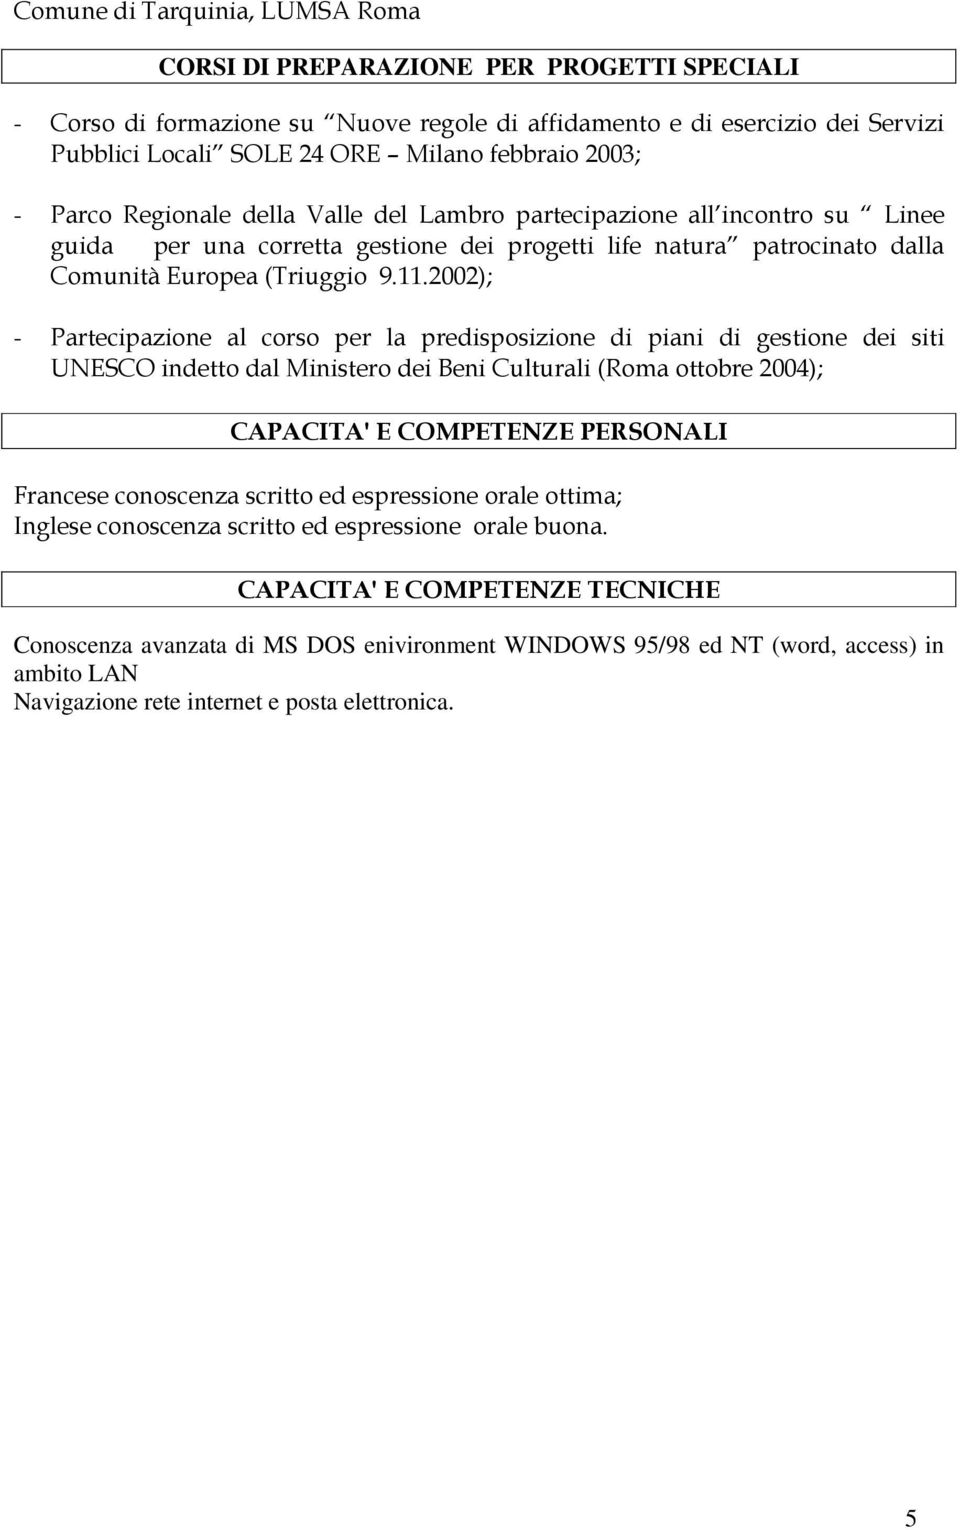 2002); - Partecipazione al corso per la predisposizione di piani di gestione dei siti UNESCO indetto dal Ministero dei Beni Culturali (Roma ottobre 2004); CAPACITA' E COMPETENZE PERSONALI Francese